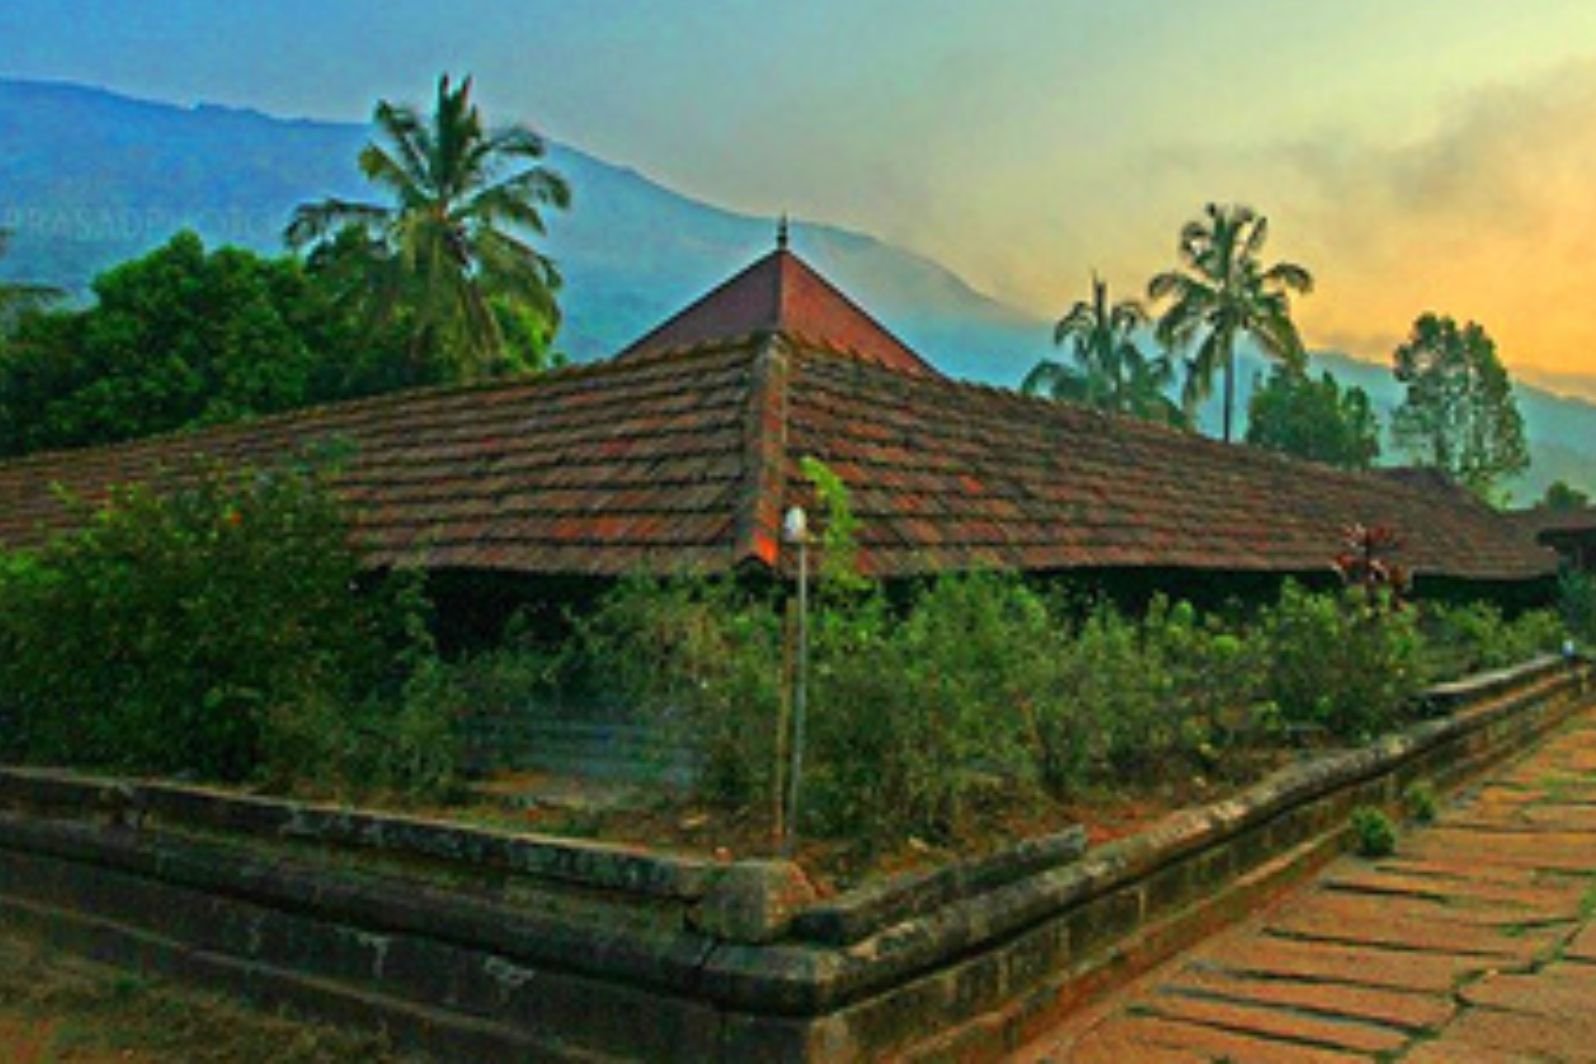 Thirunelli temple